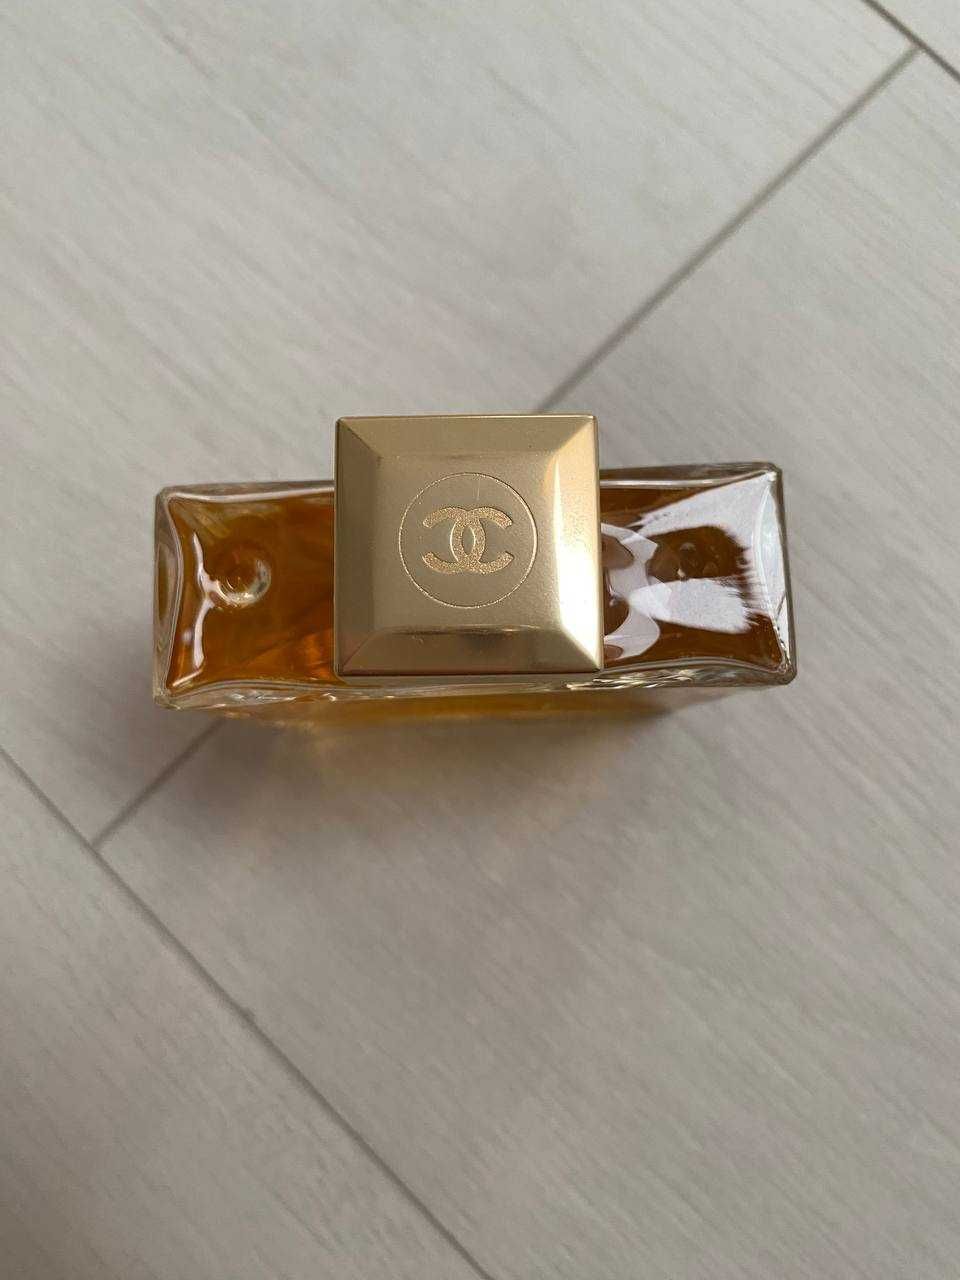 Chanel gabrielle parfum essense